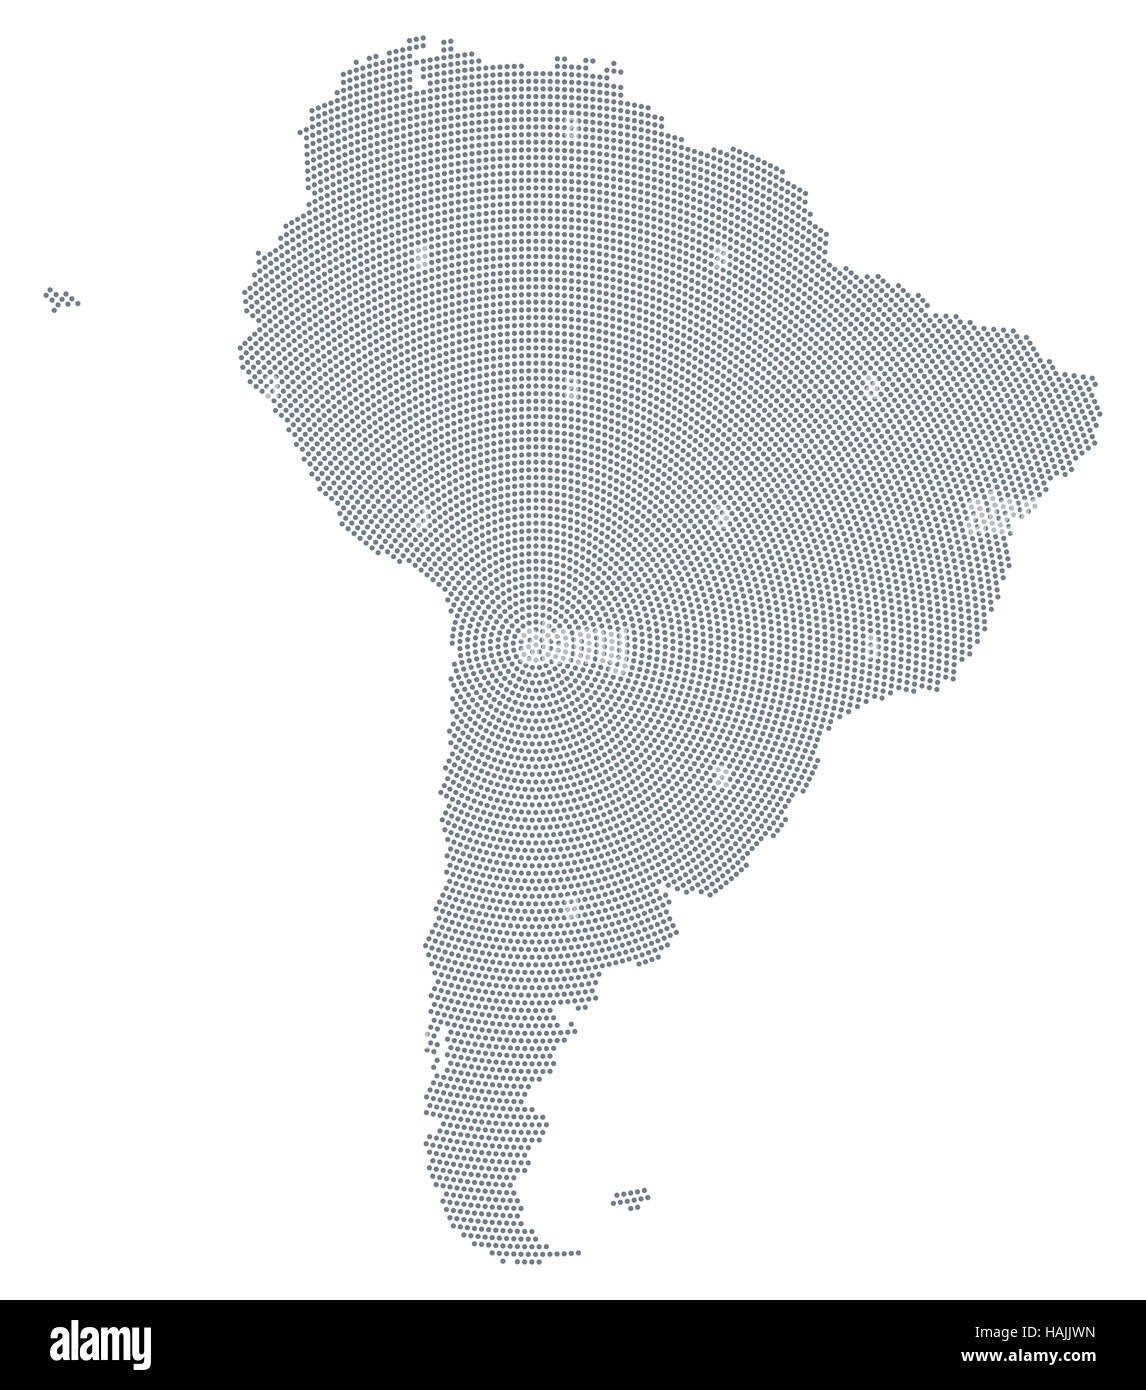 La carte de l'Amérique du Sud point motif radial. Les points gris allant du centre formant les silhouettes du continent. Banque D'Images